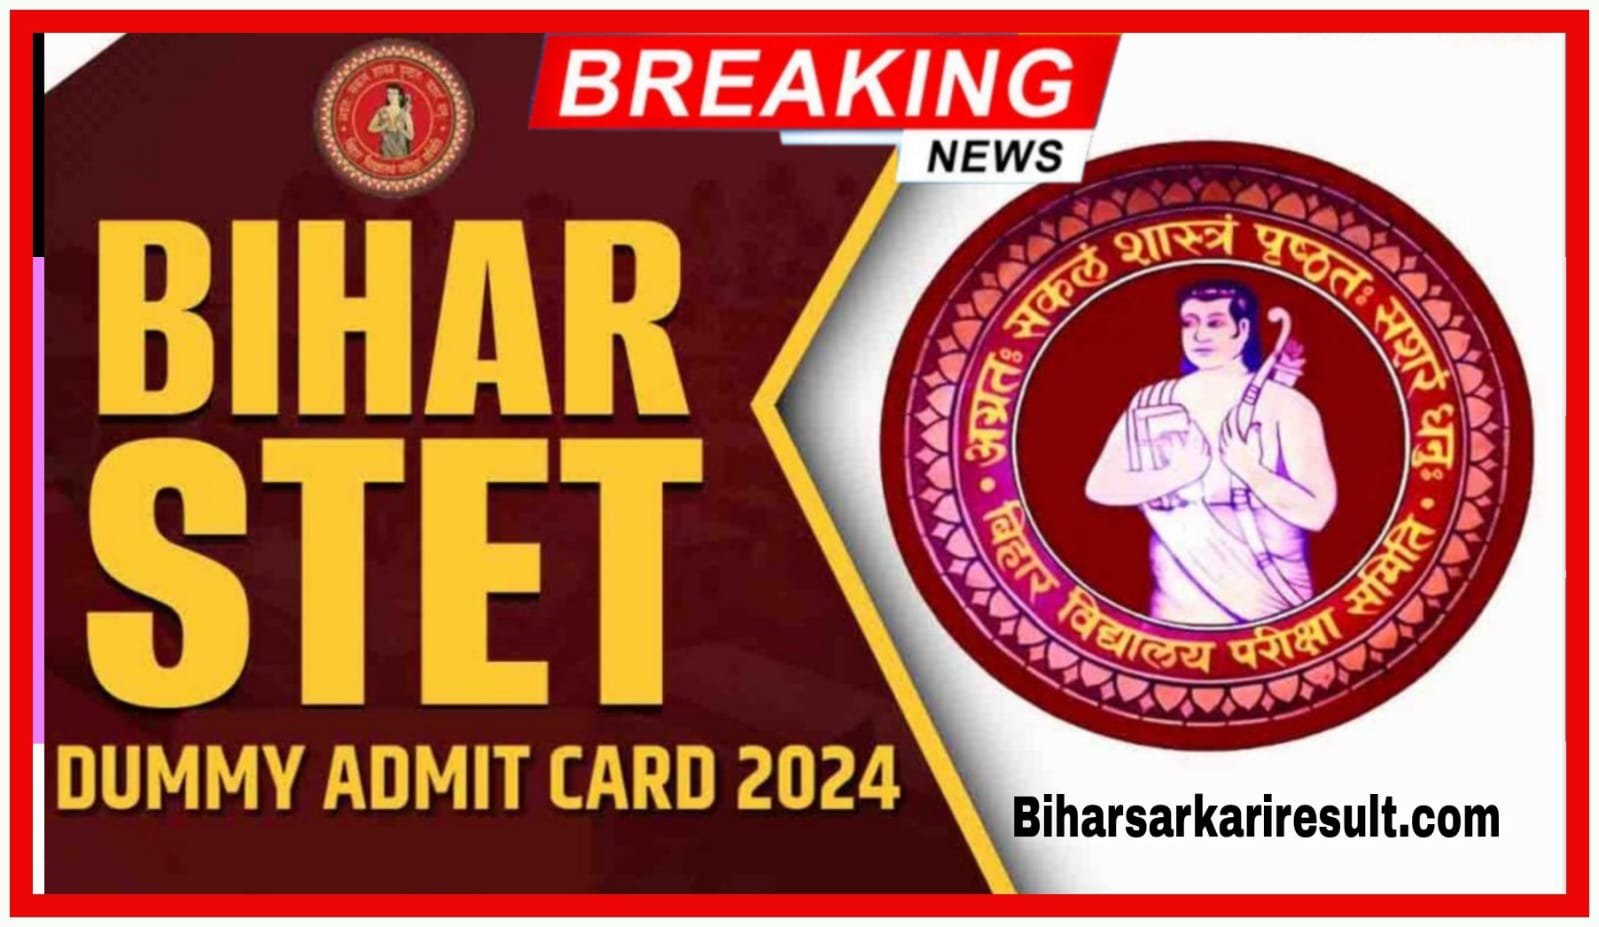 Bihar 2nd STET Dummy Admit Card 2024 Download